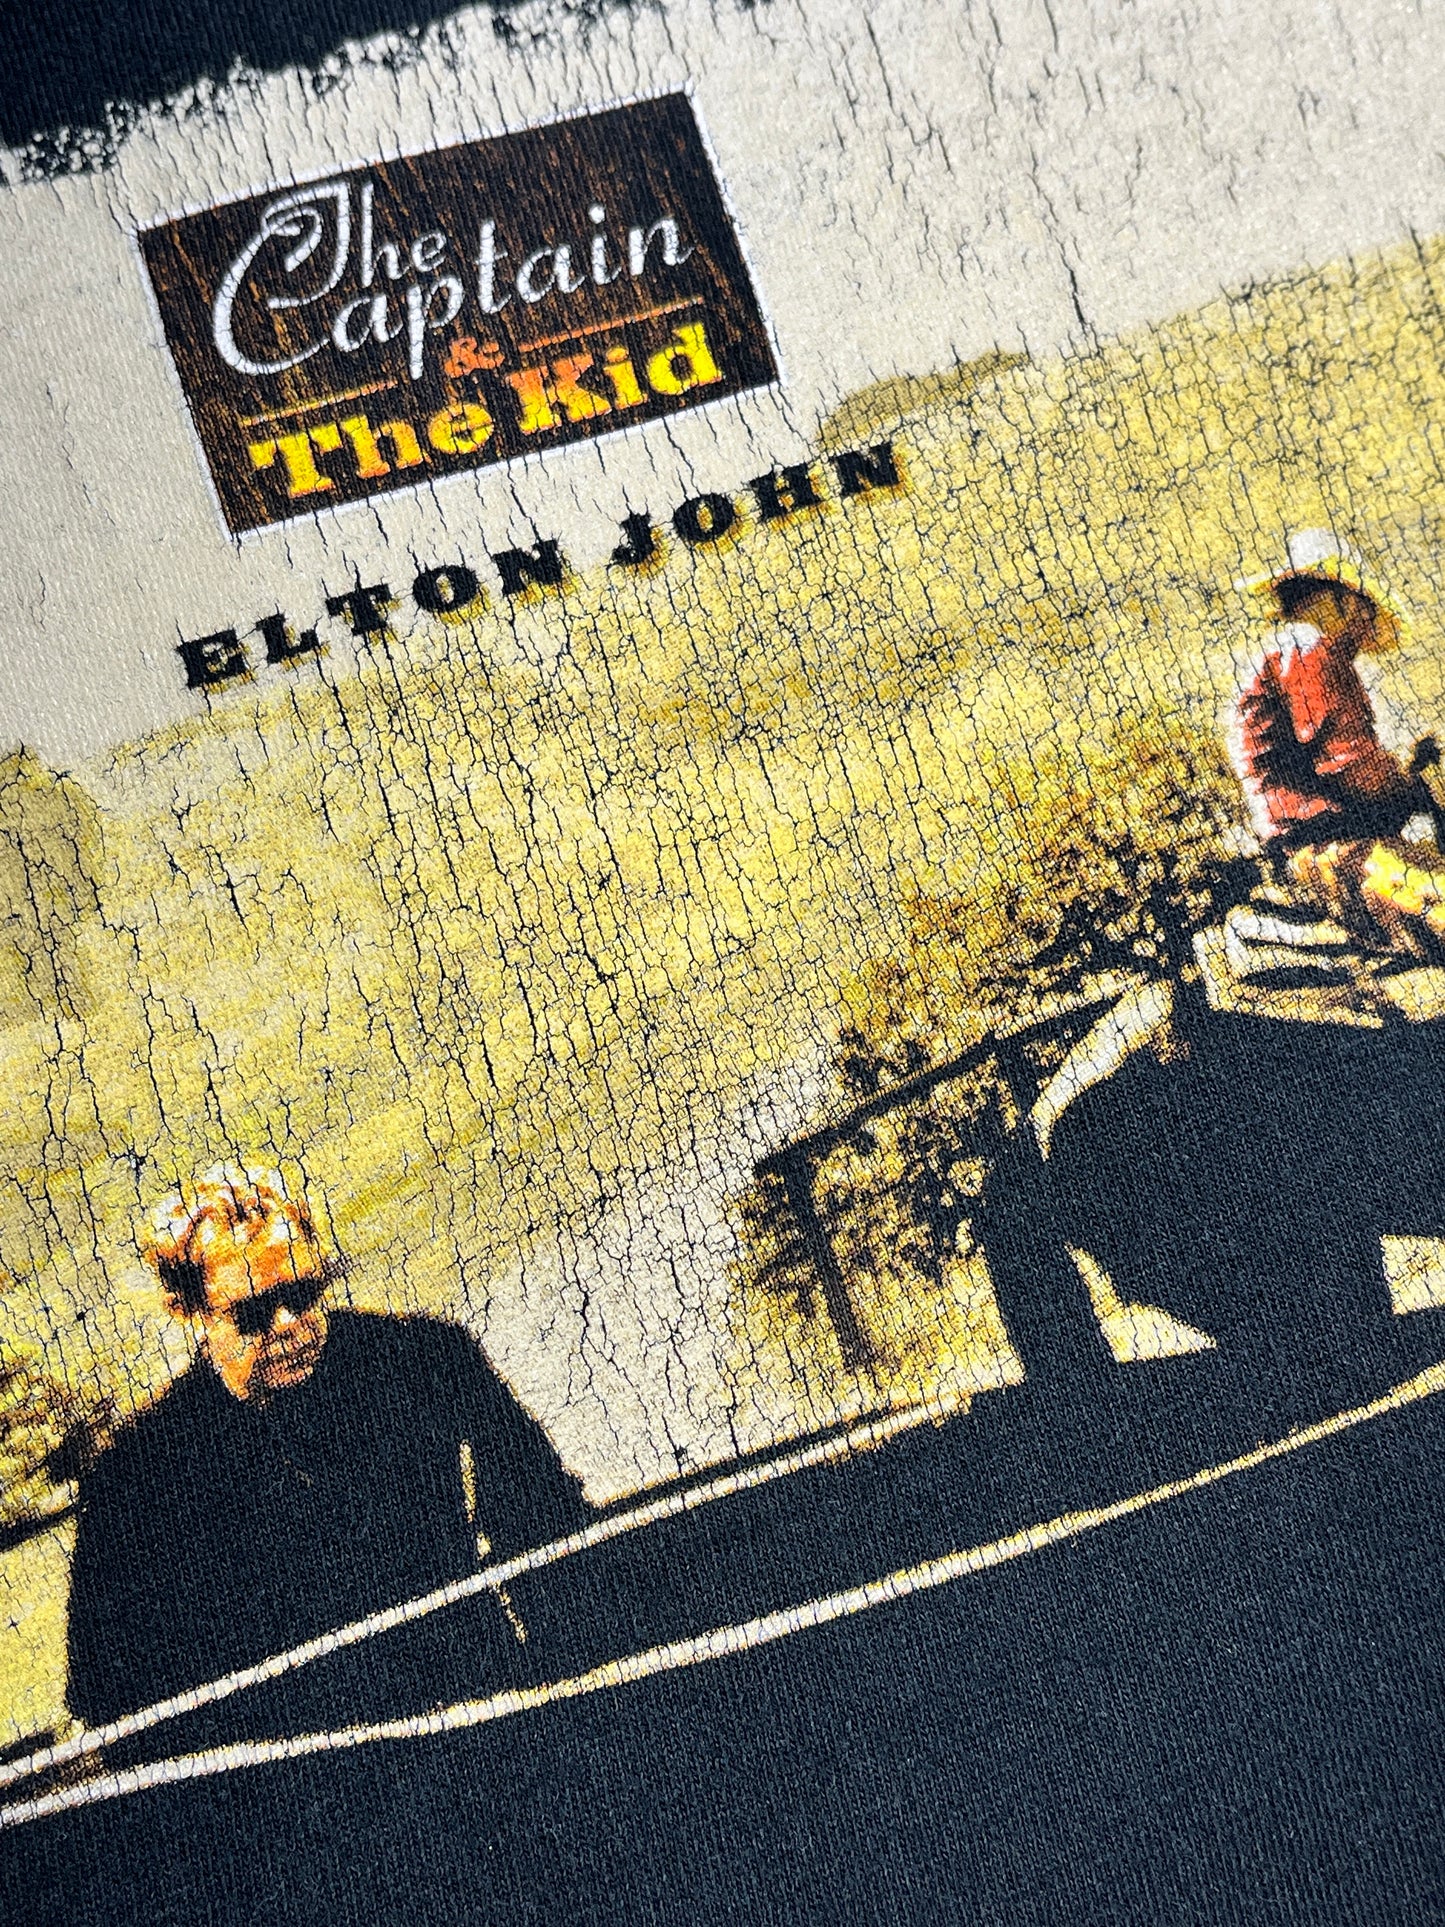 Vintage Elton John T-Shirt The Captain & The Kid